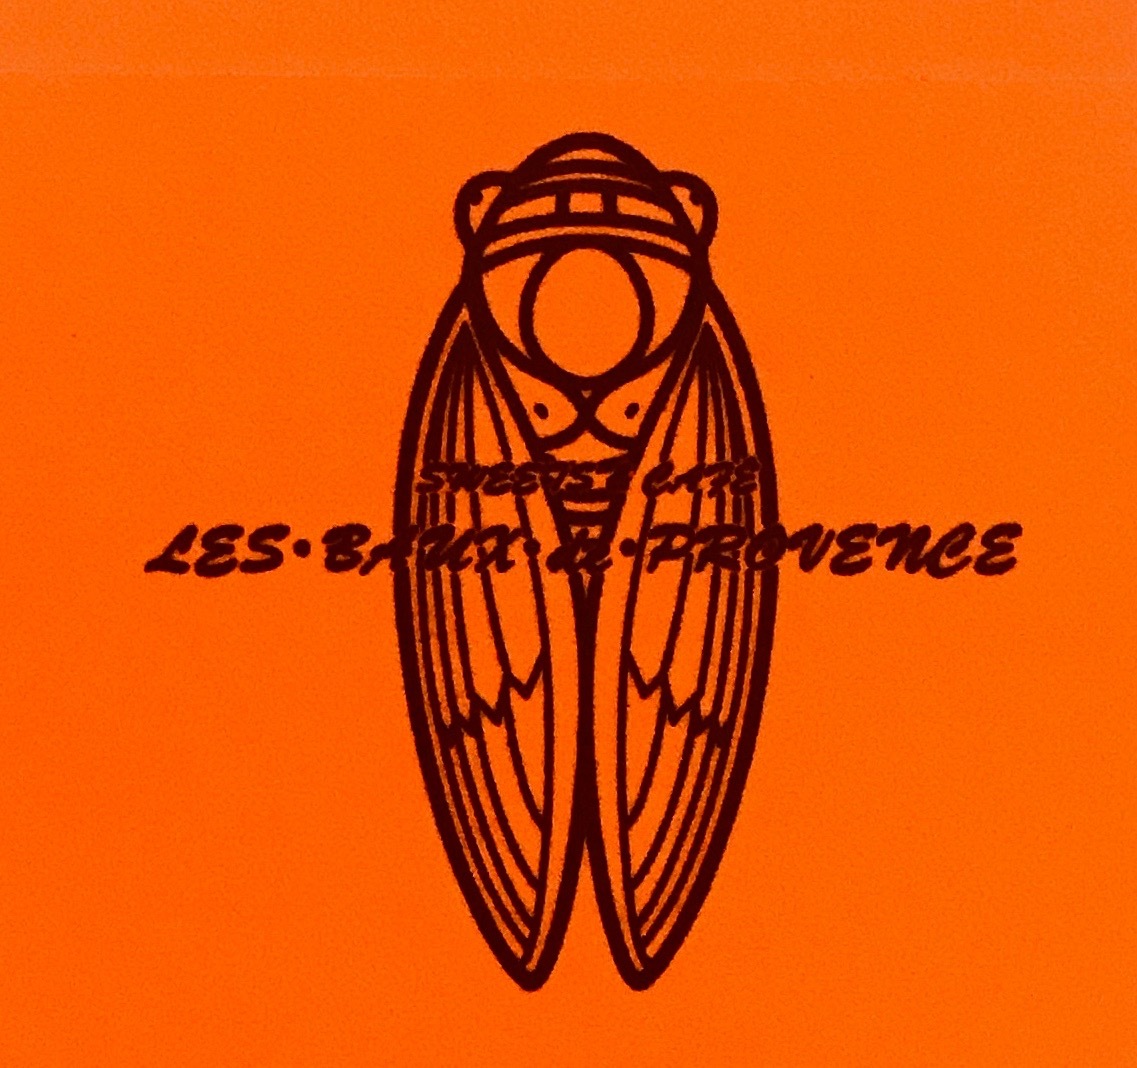 Les・Baux・de・Provence